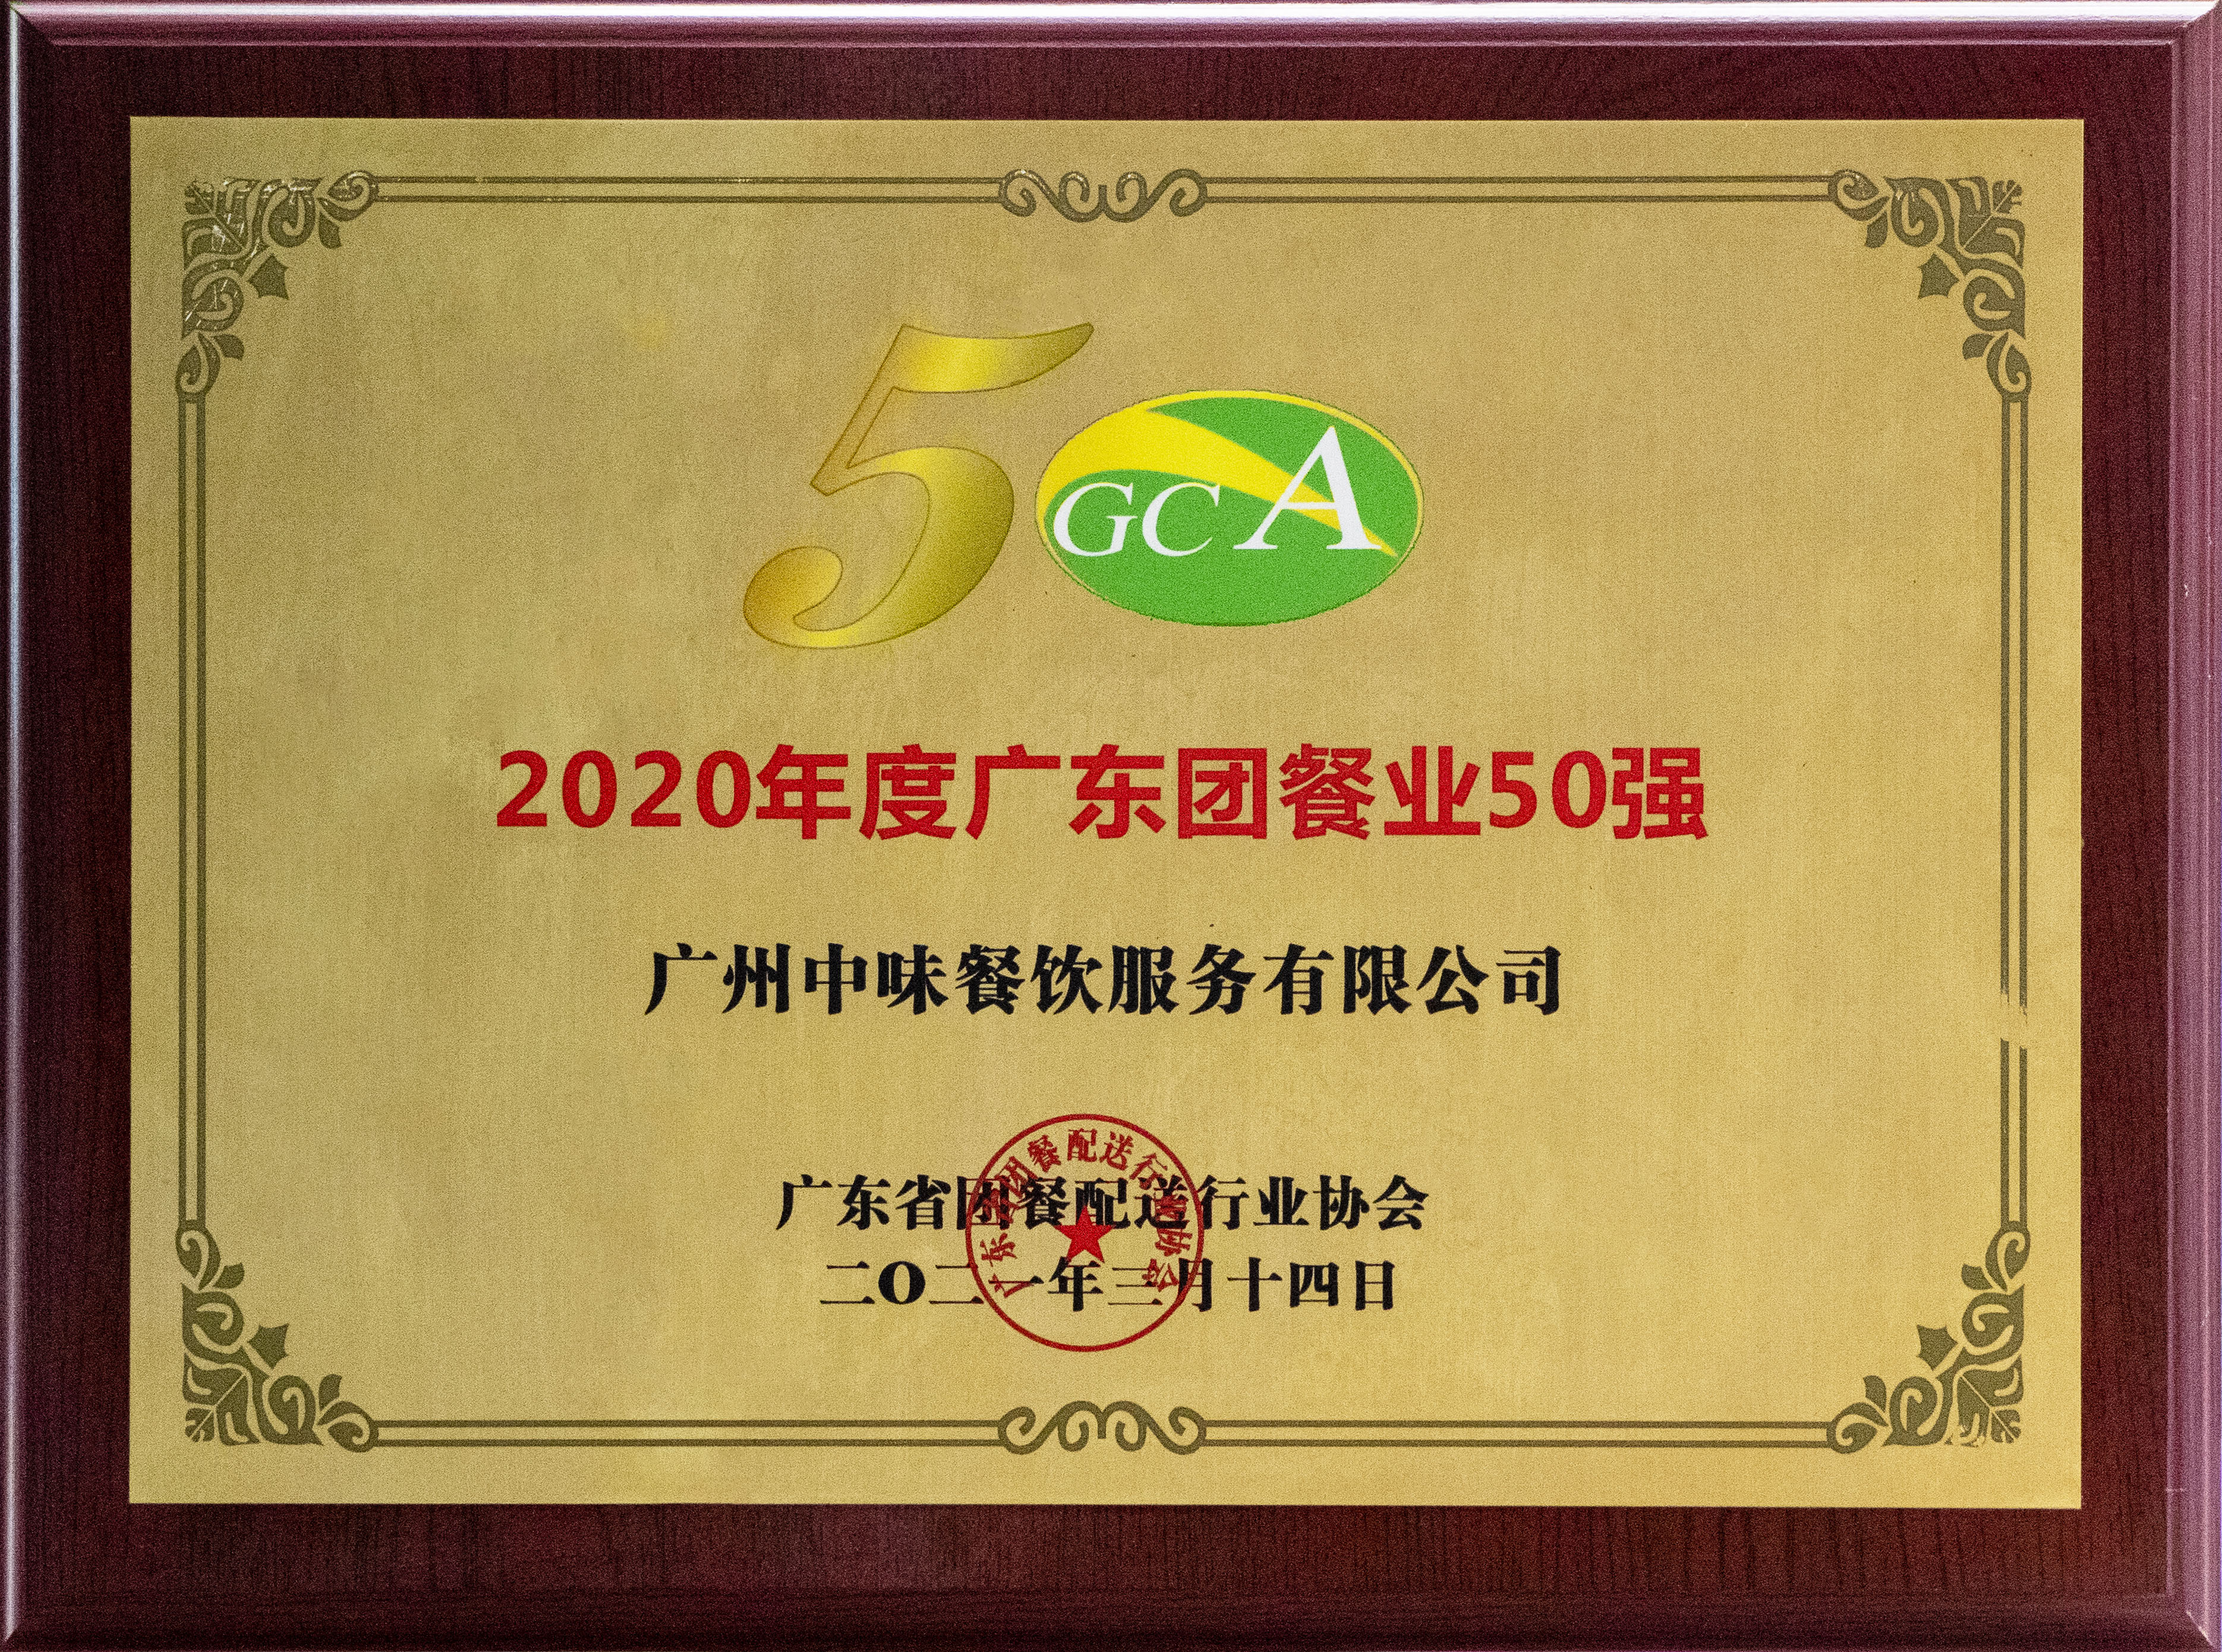 2020年度廣東團餐業50強